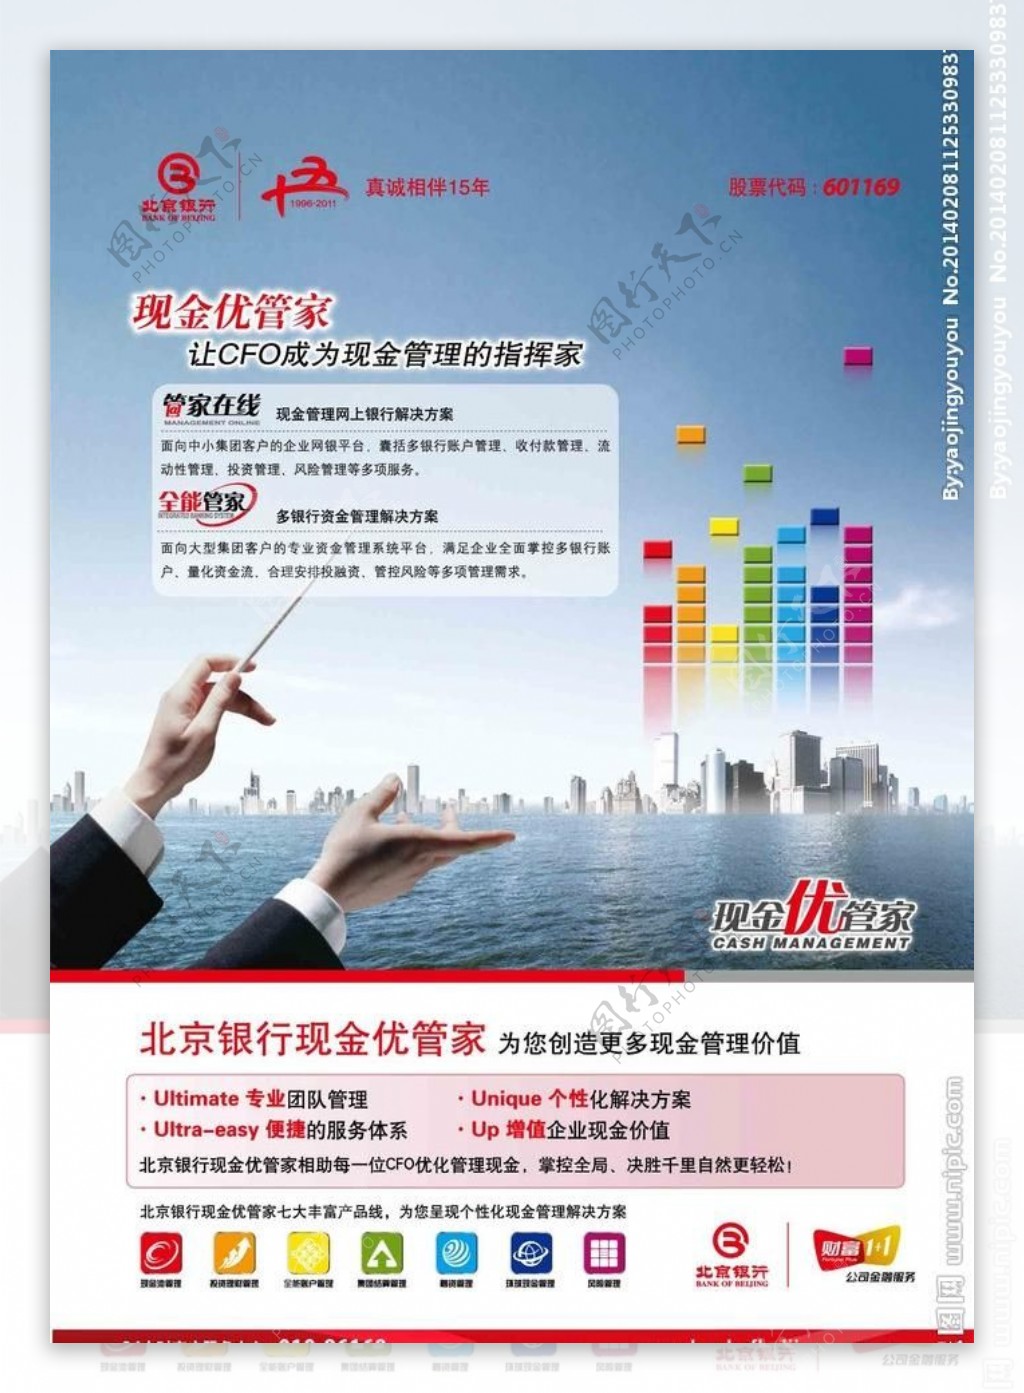 北京银行宣传广告图片